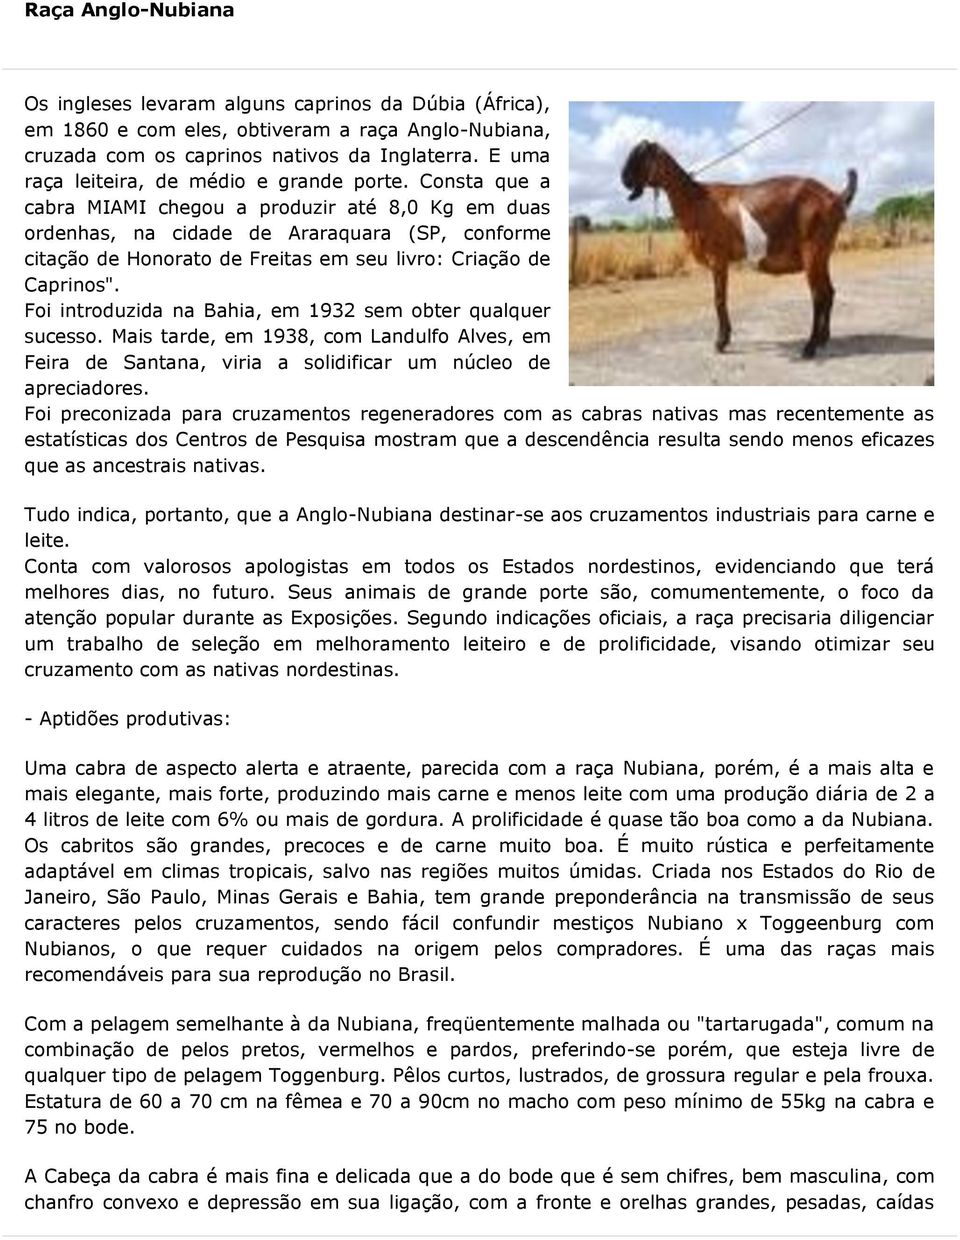 Consta que a cabra MIAMI chegou a produzir até 8,0 Kg em duas ordenhas, na cidade de Araraquara (SP, conforme citação de Honorato de Freitas em seu livro: Criação de Caprinos".